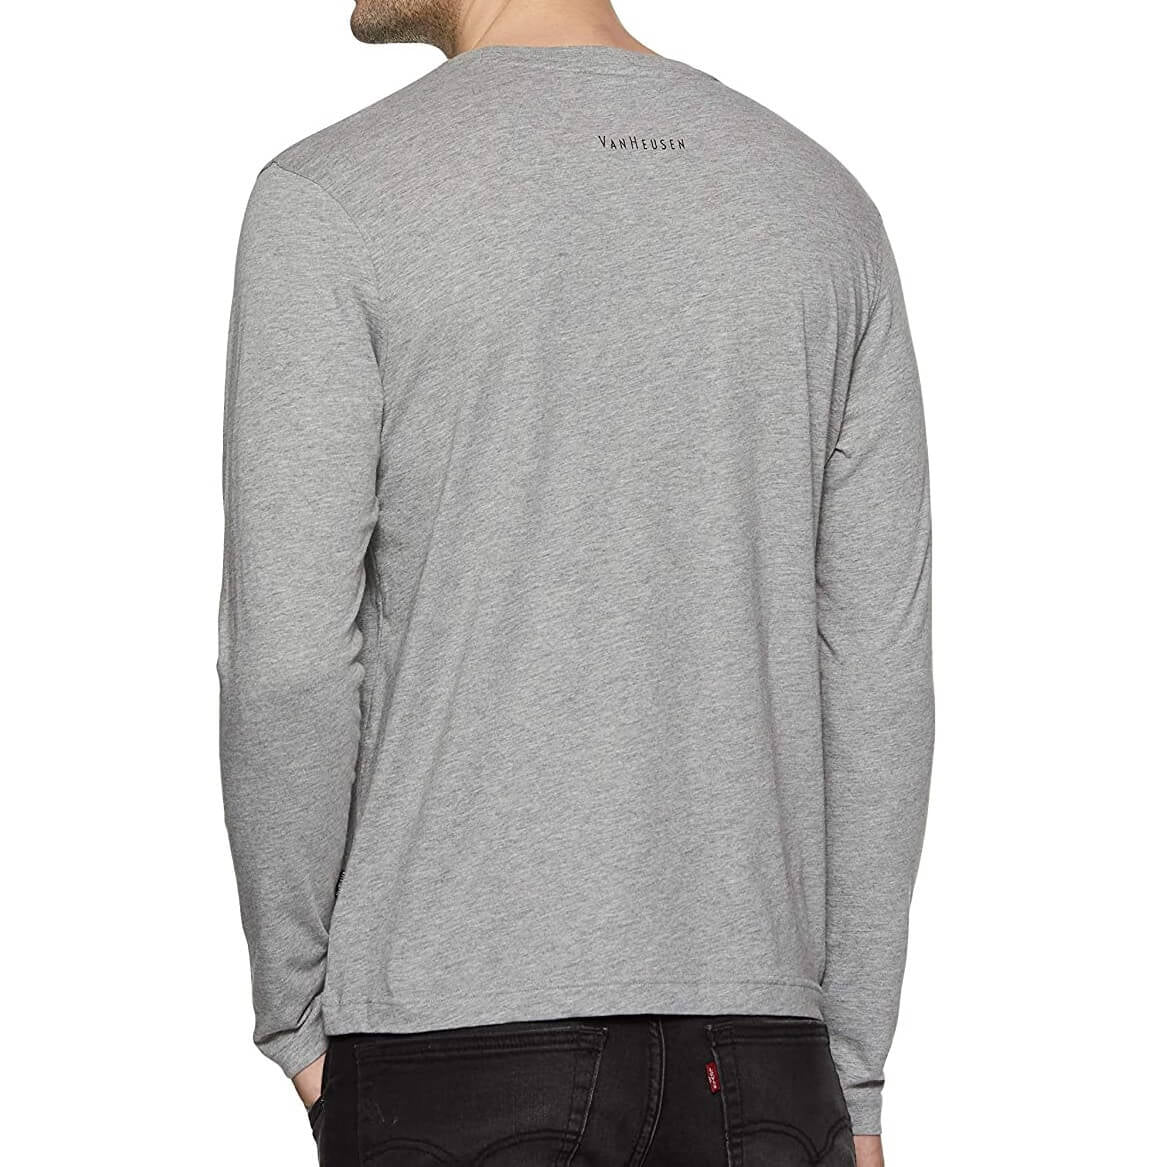 Van Heusen Grey Round Neck Full Sleeve T-Shirt for Men #60037